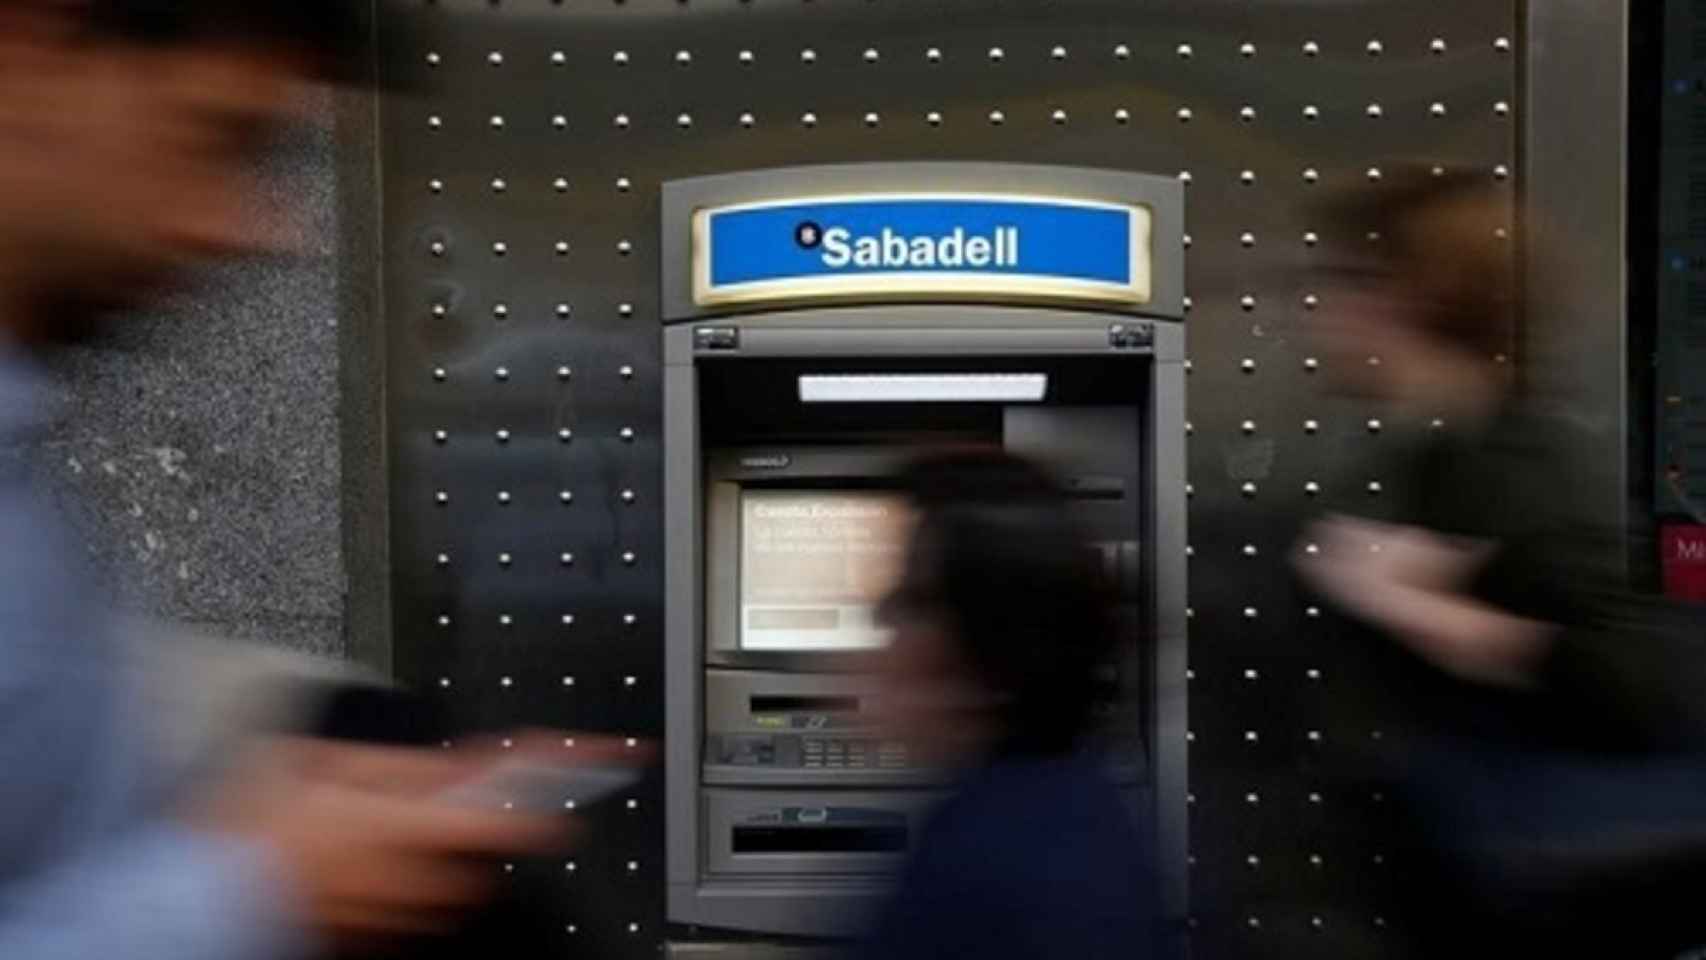 El Sabadell intenta recuperar el terreno perdido el viernes gracias a una mejora de recomendación